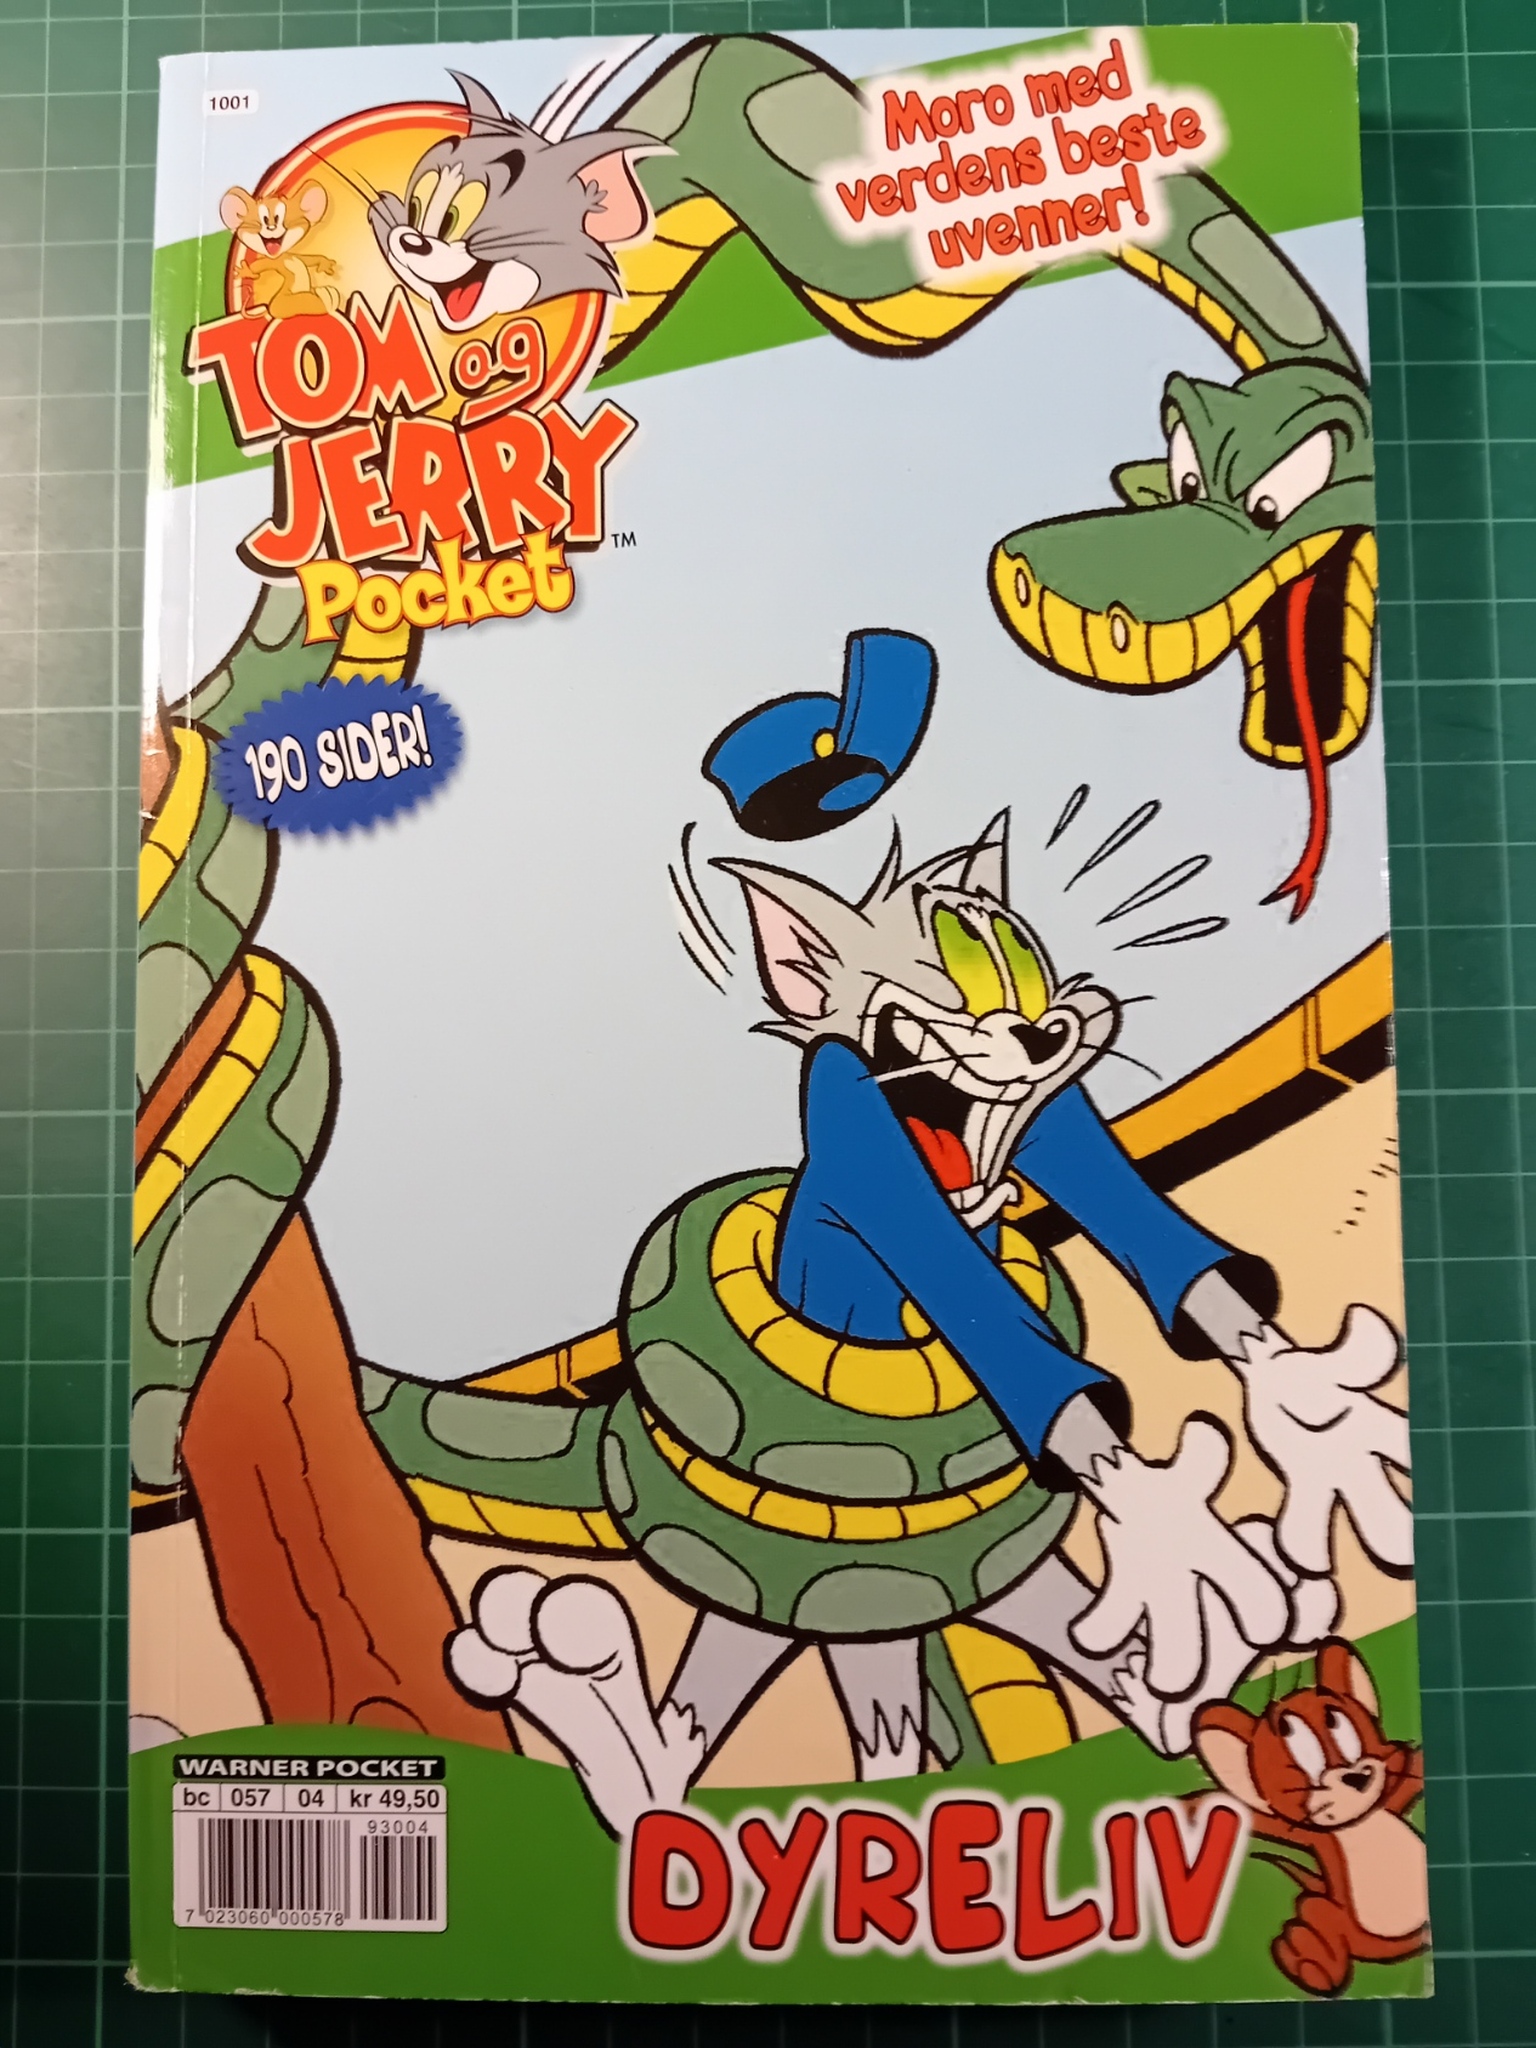 Tom og Jerry pocket 04